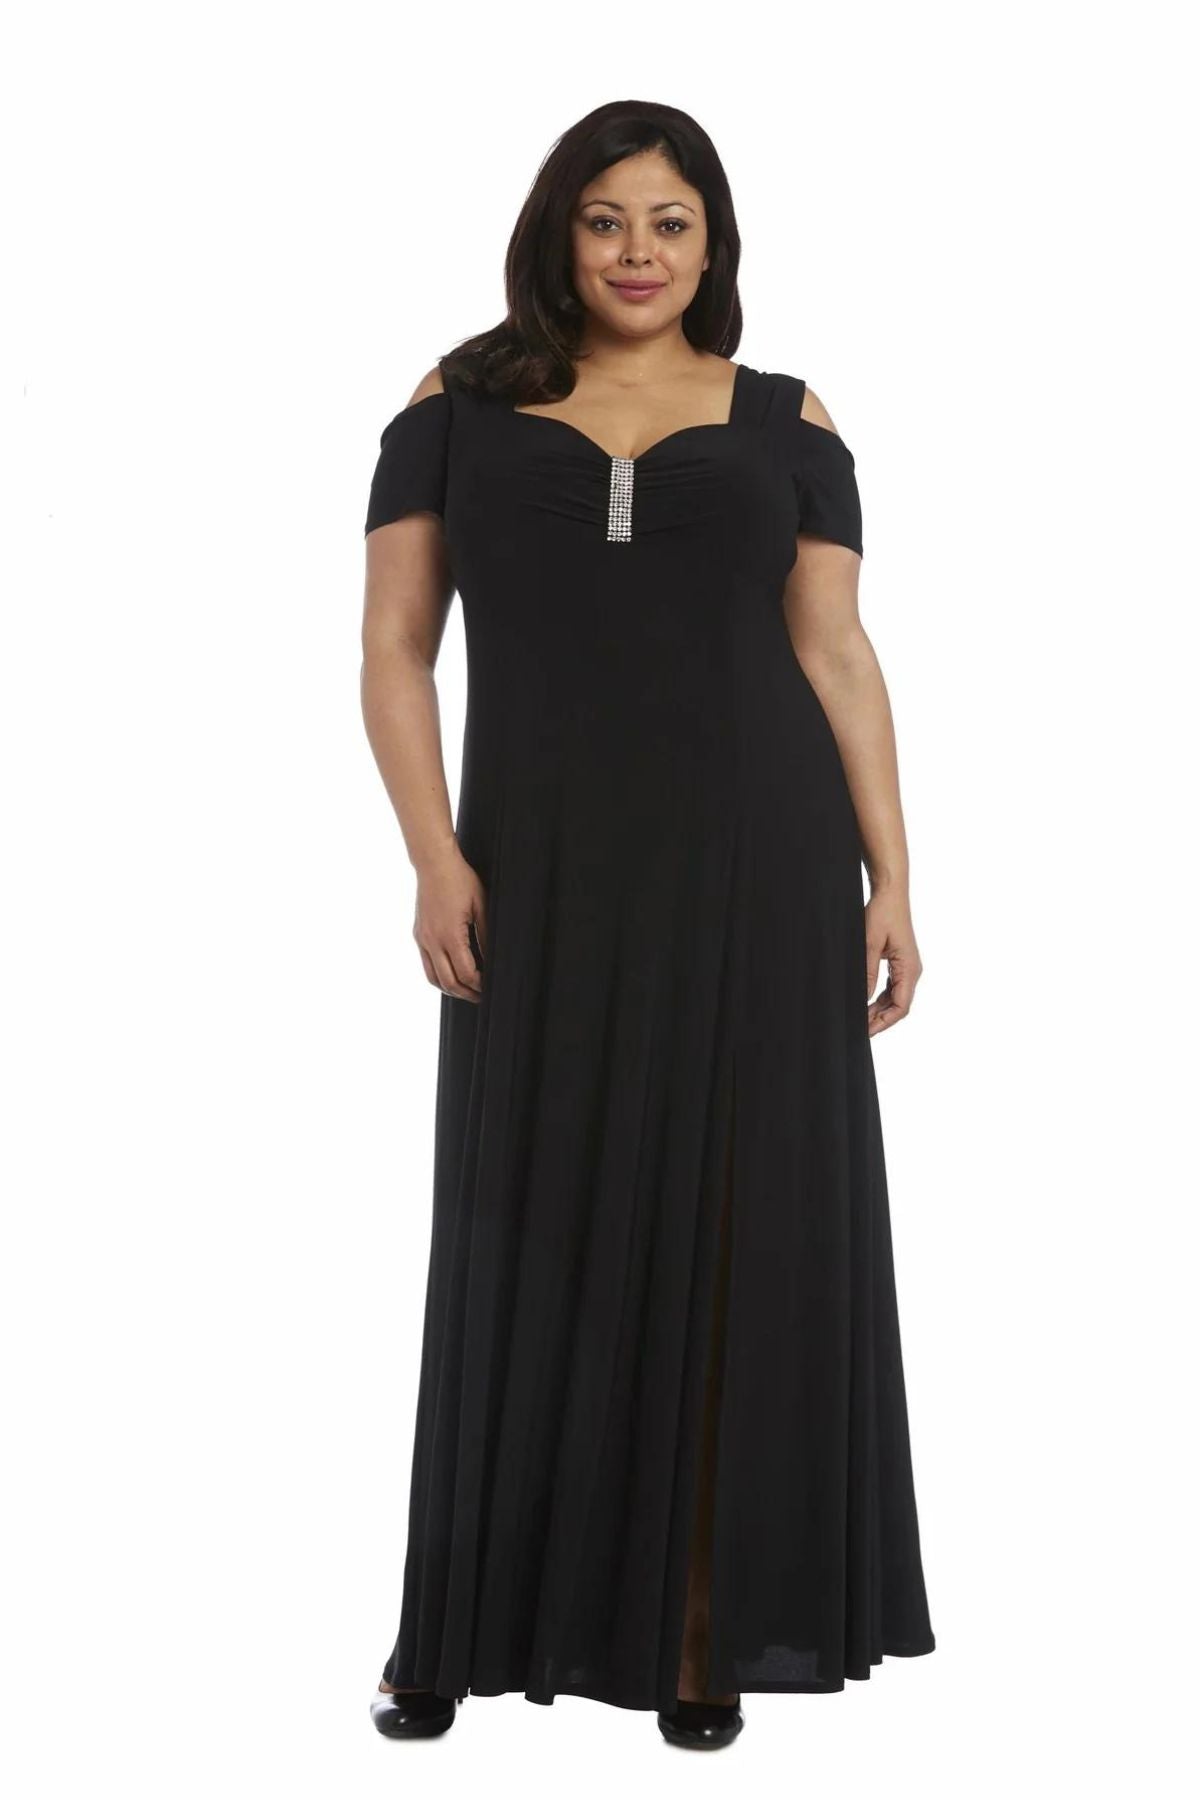 Plus Size Formal Dresses in Plus Size Dresses - Walmart.com